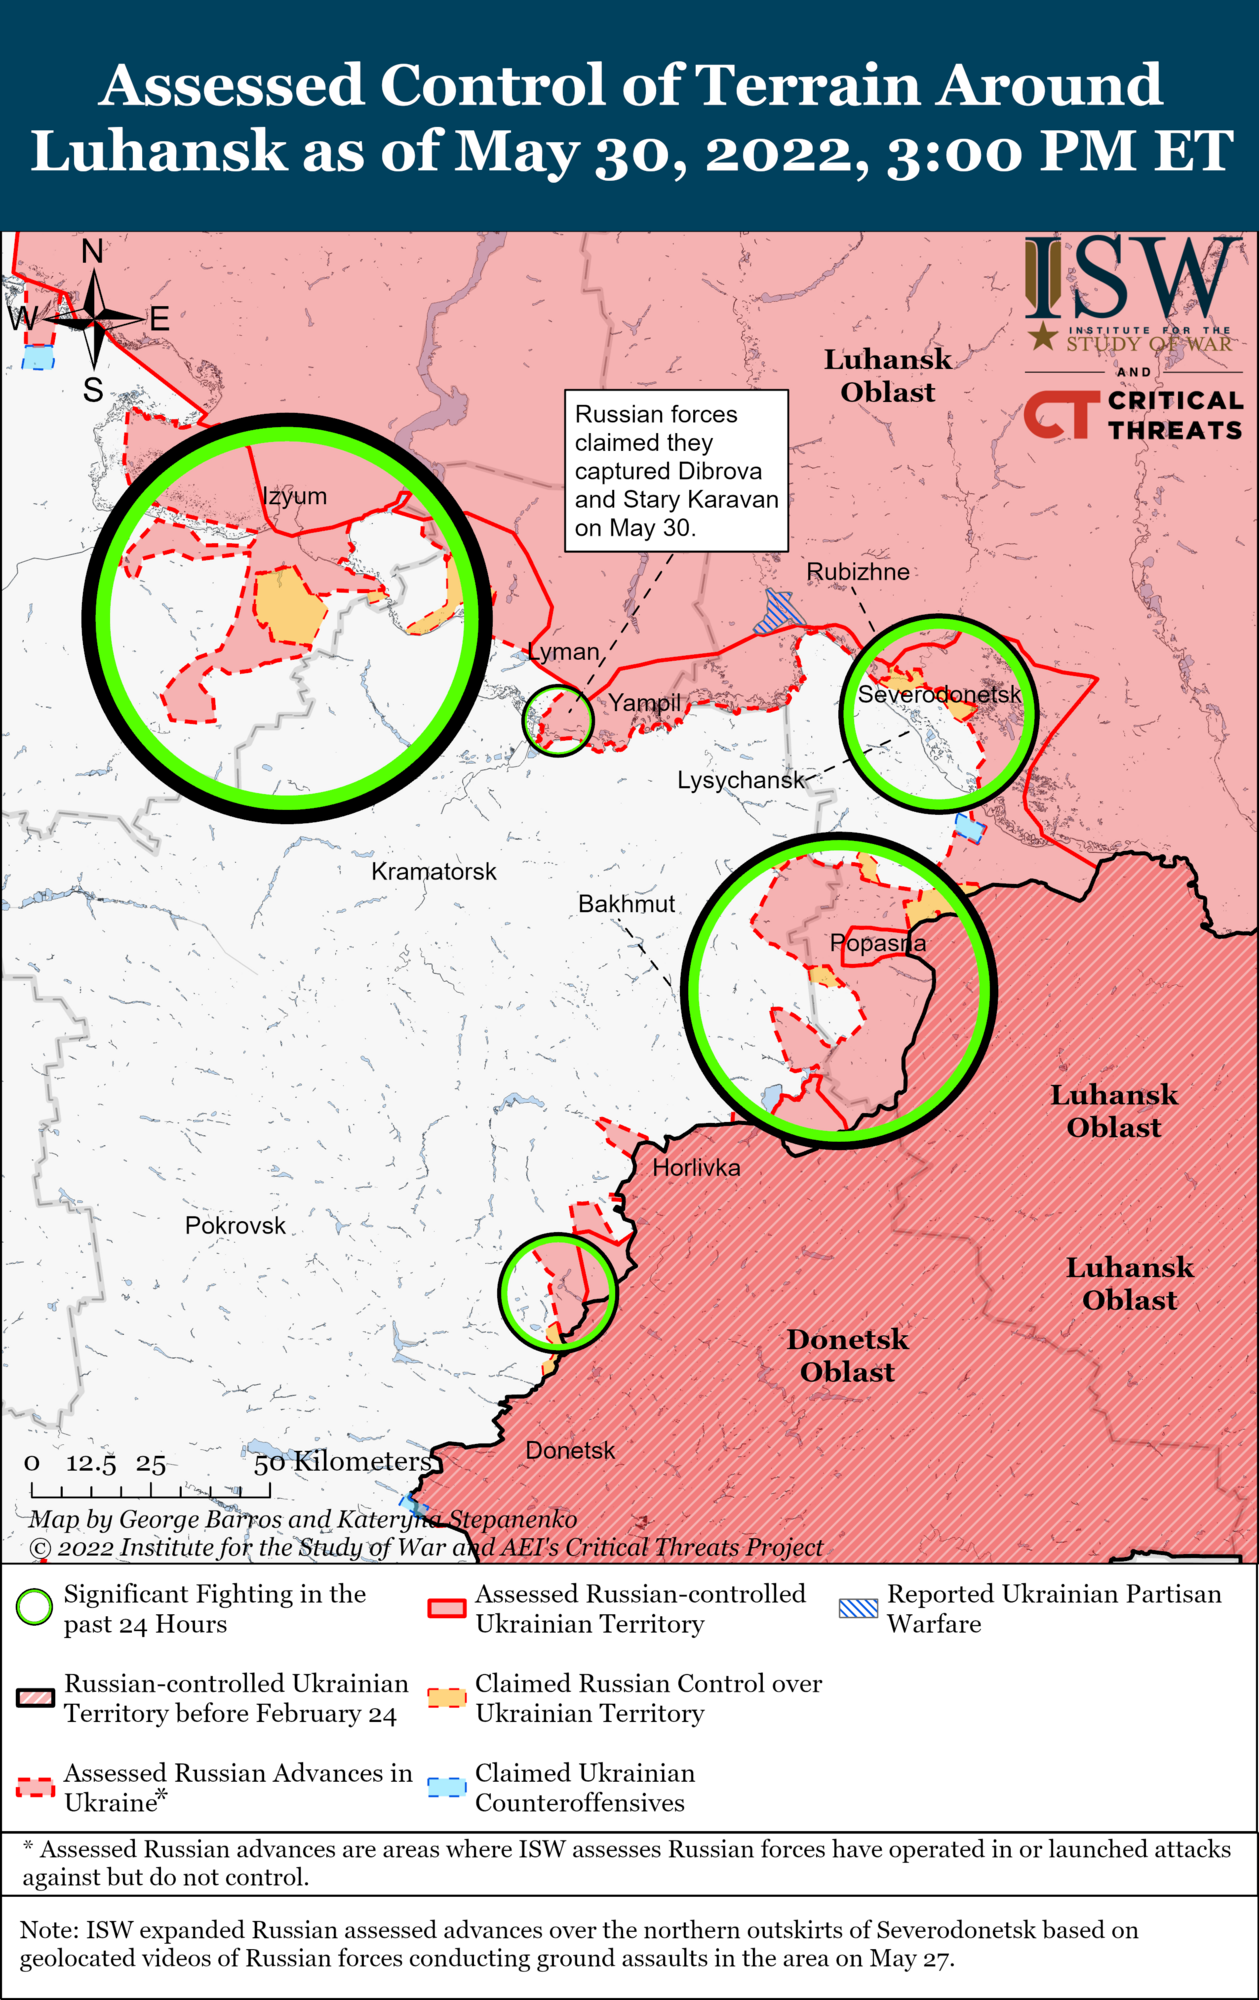 Карта бойових дій на Донбасі